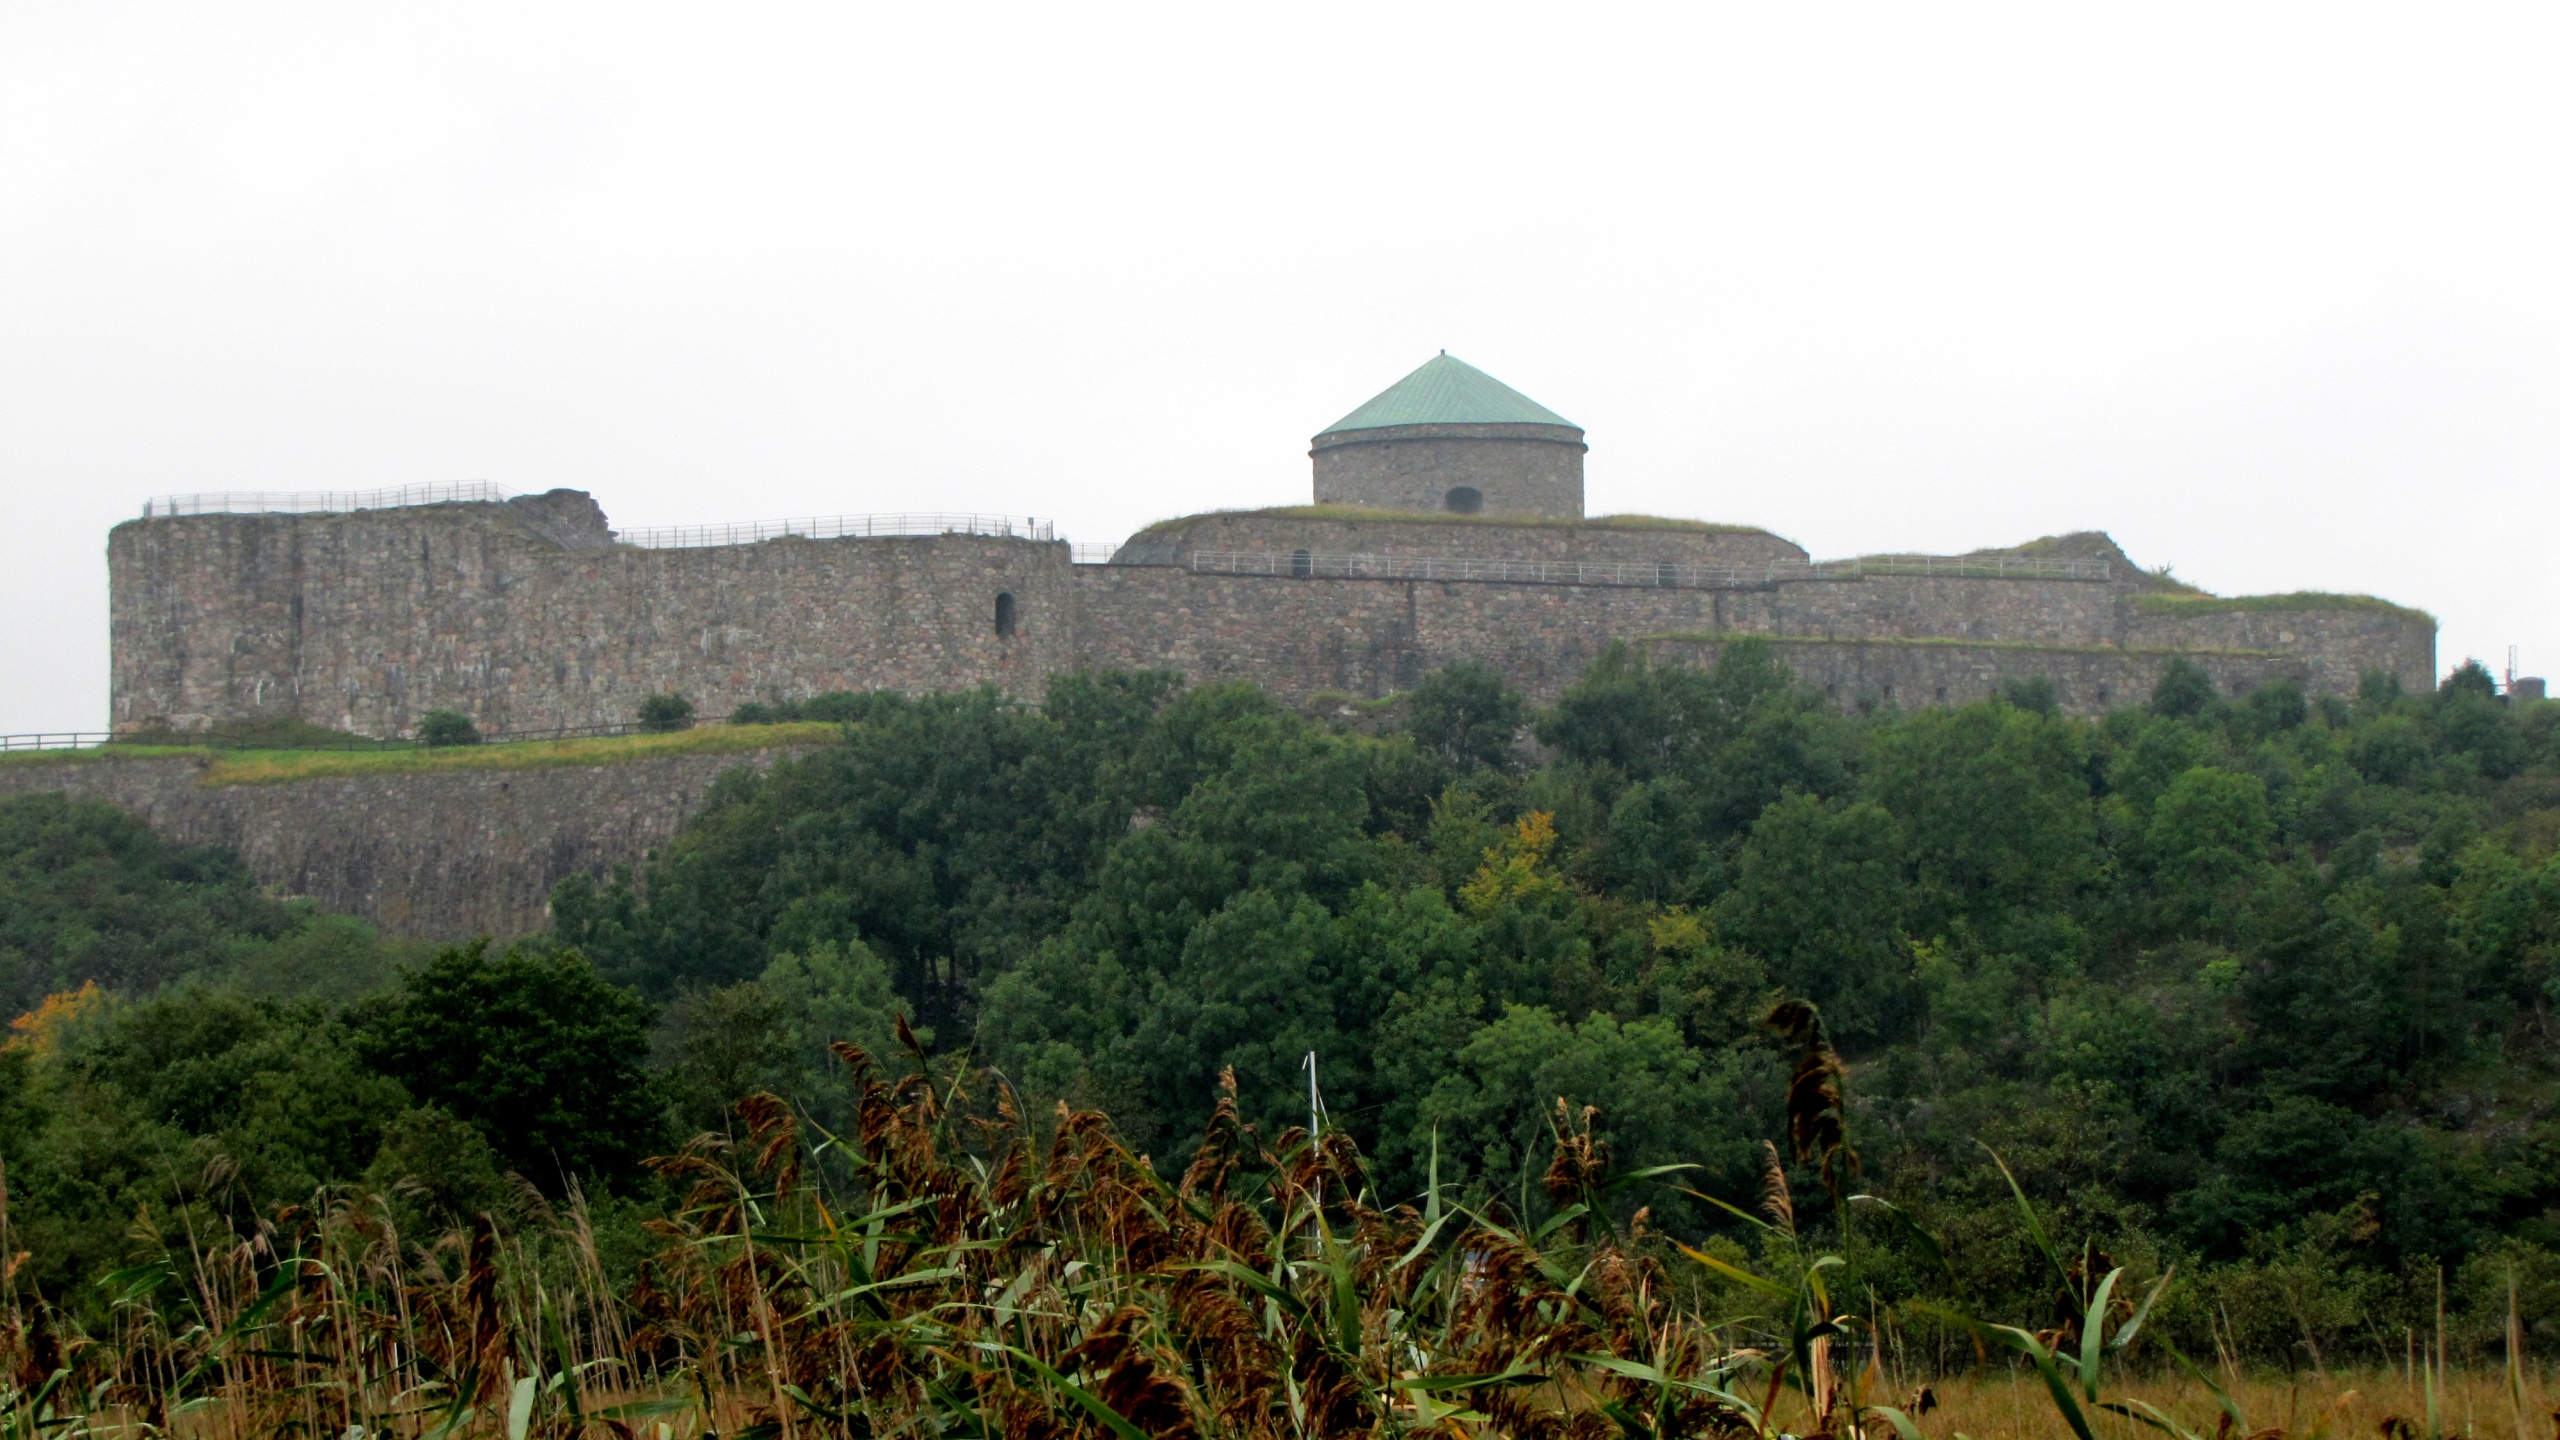 Man Made Bohus Fortress 2560x1440